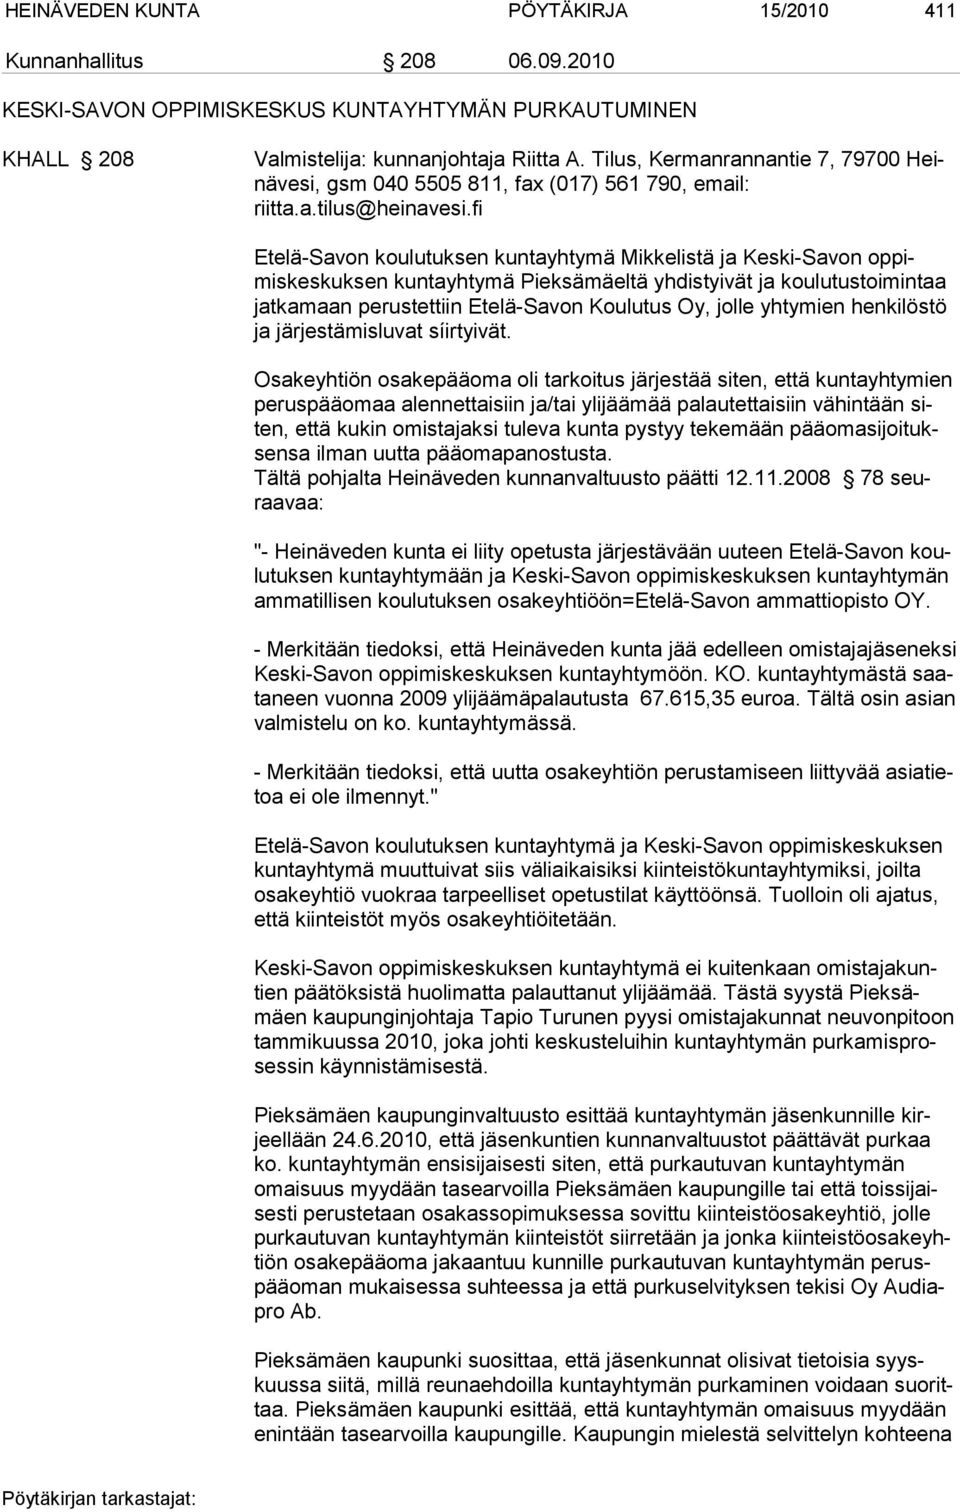 fi Etelä-Savon koulutuksen kuntayhtymä Mikkelistä ja Keski-Savon op pimiskeskuksen kuntayhtymä Pieksämäeltä yhdistyivät ja koulutus toimintaa jatkamaan perustettiin Etelä-Savon Koulutus Oy, jolle